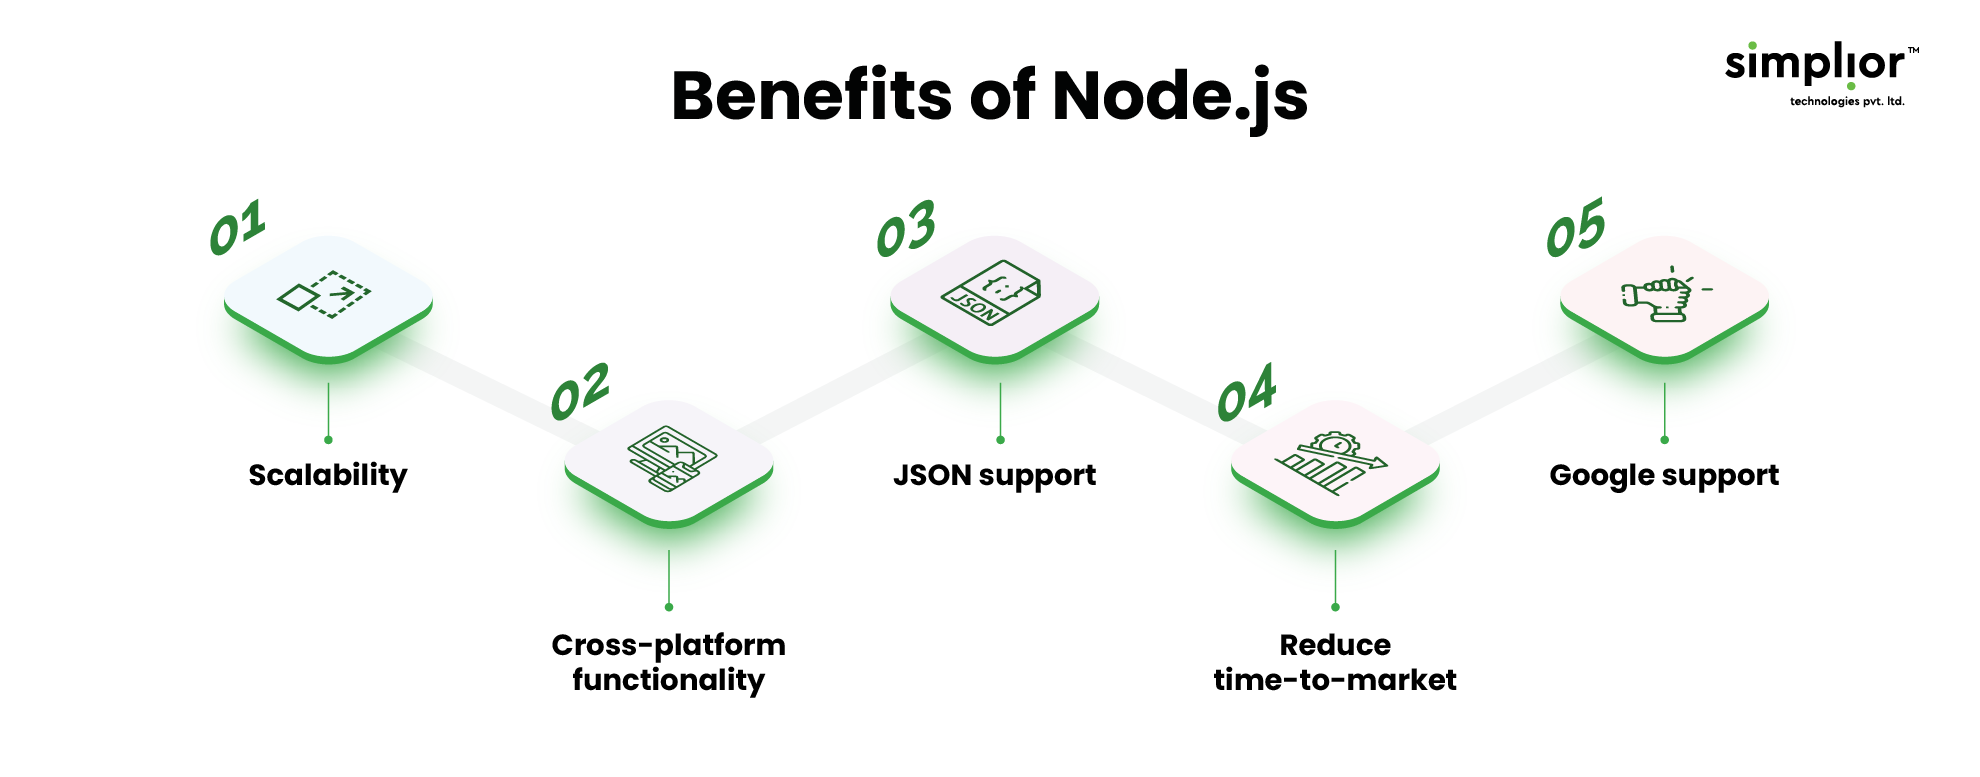 Benefits of Node.js - Simplior